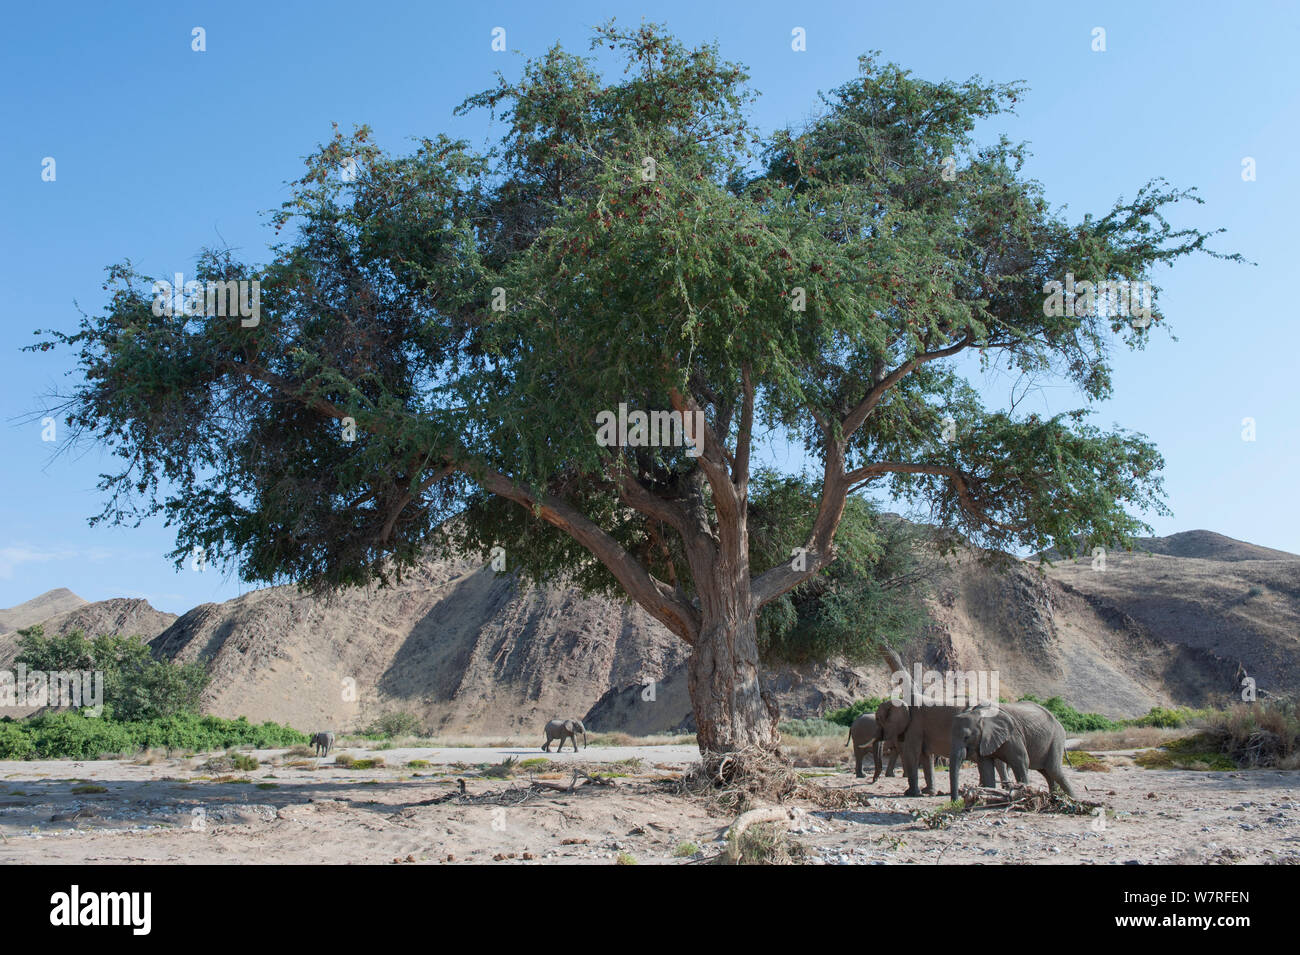 Les éléphants d'Afrique (Loxodonta africana) à l'ombre d'un arbre, Désert, Namibie Kaokoveld Banque D'Images